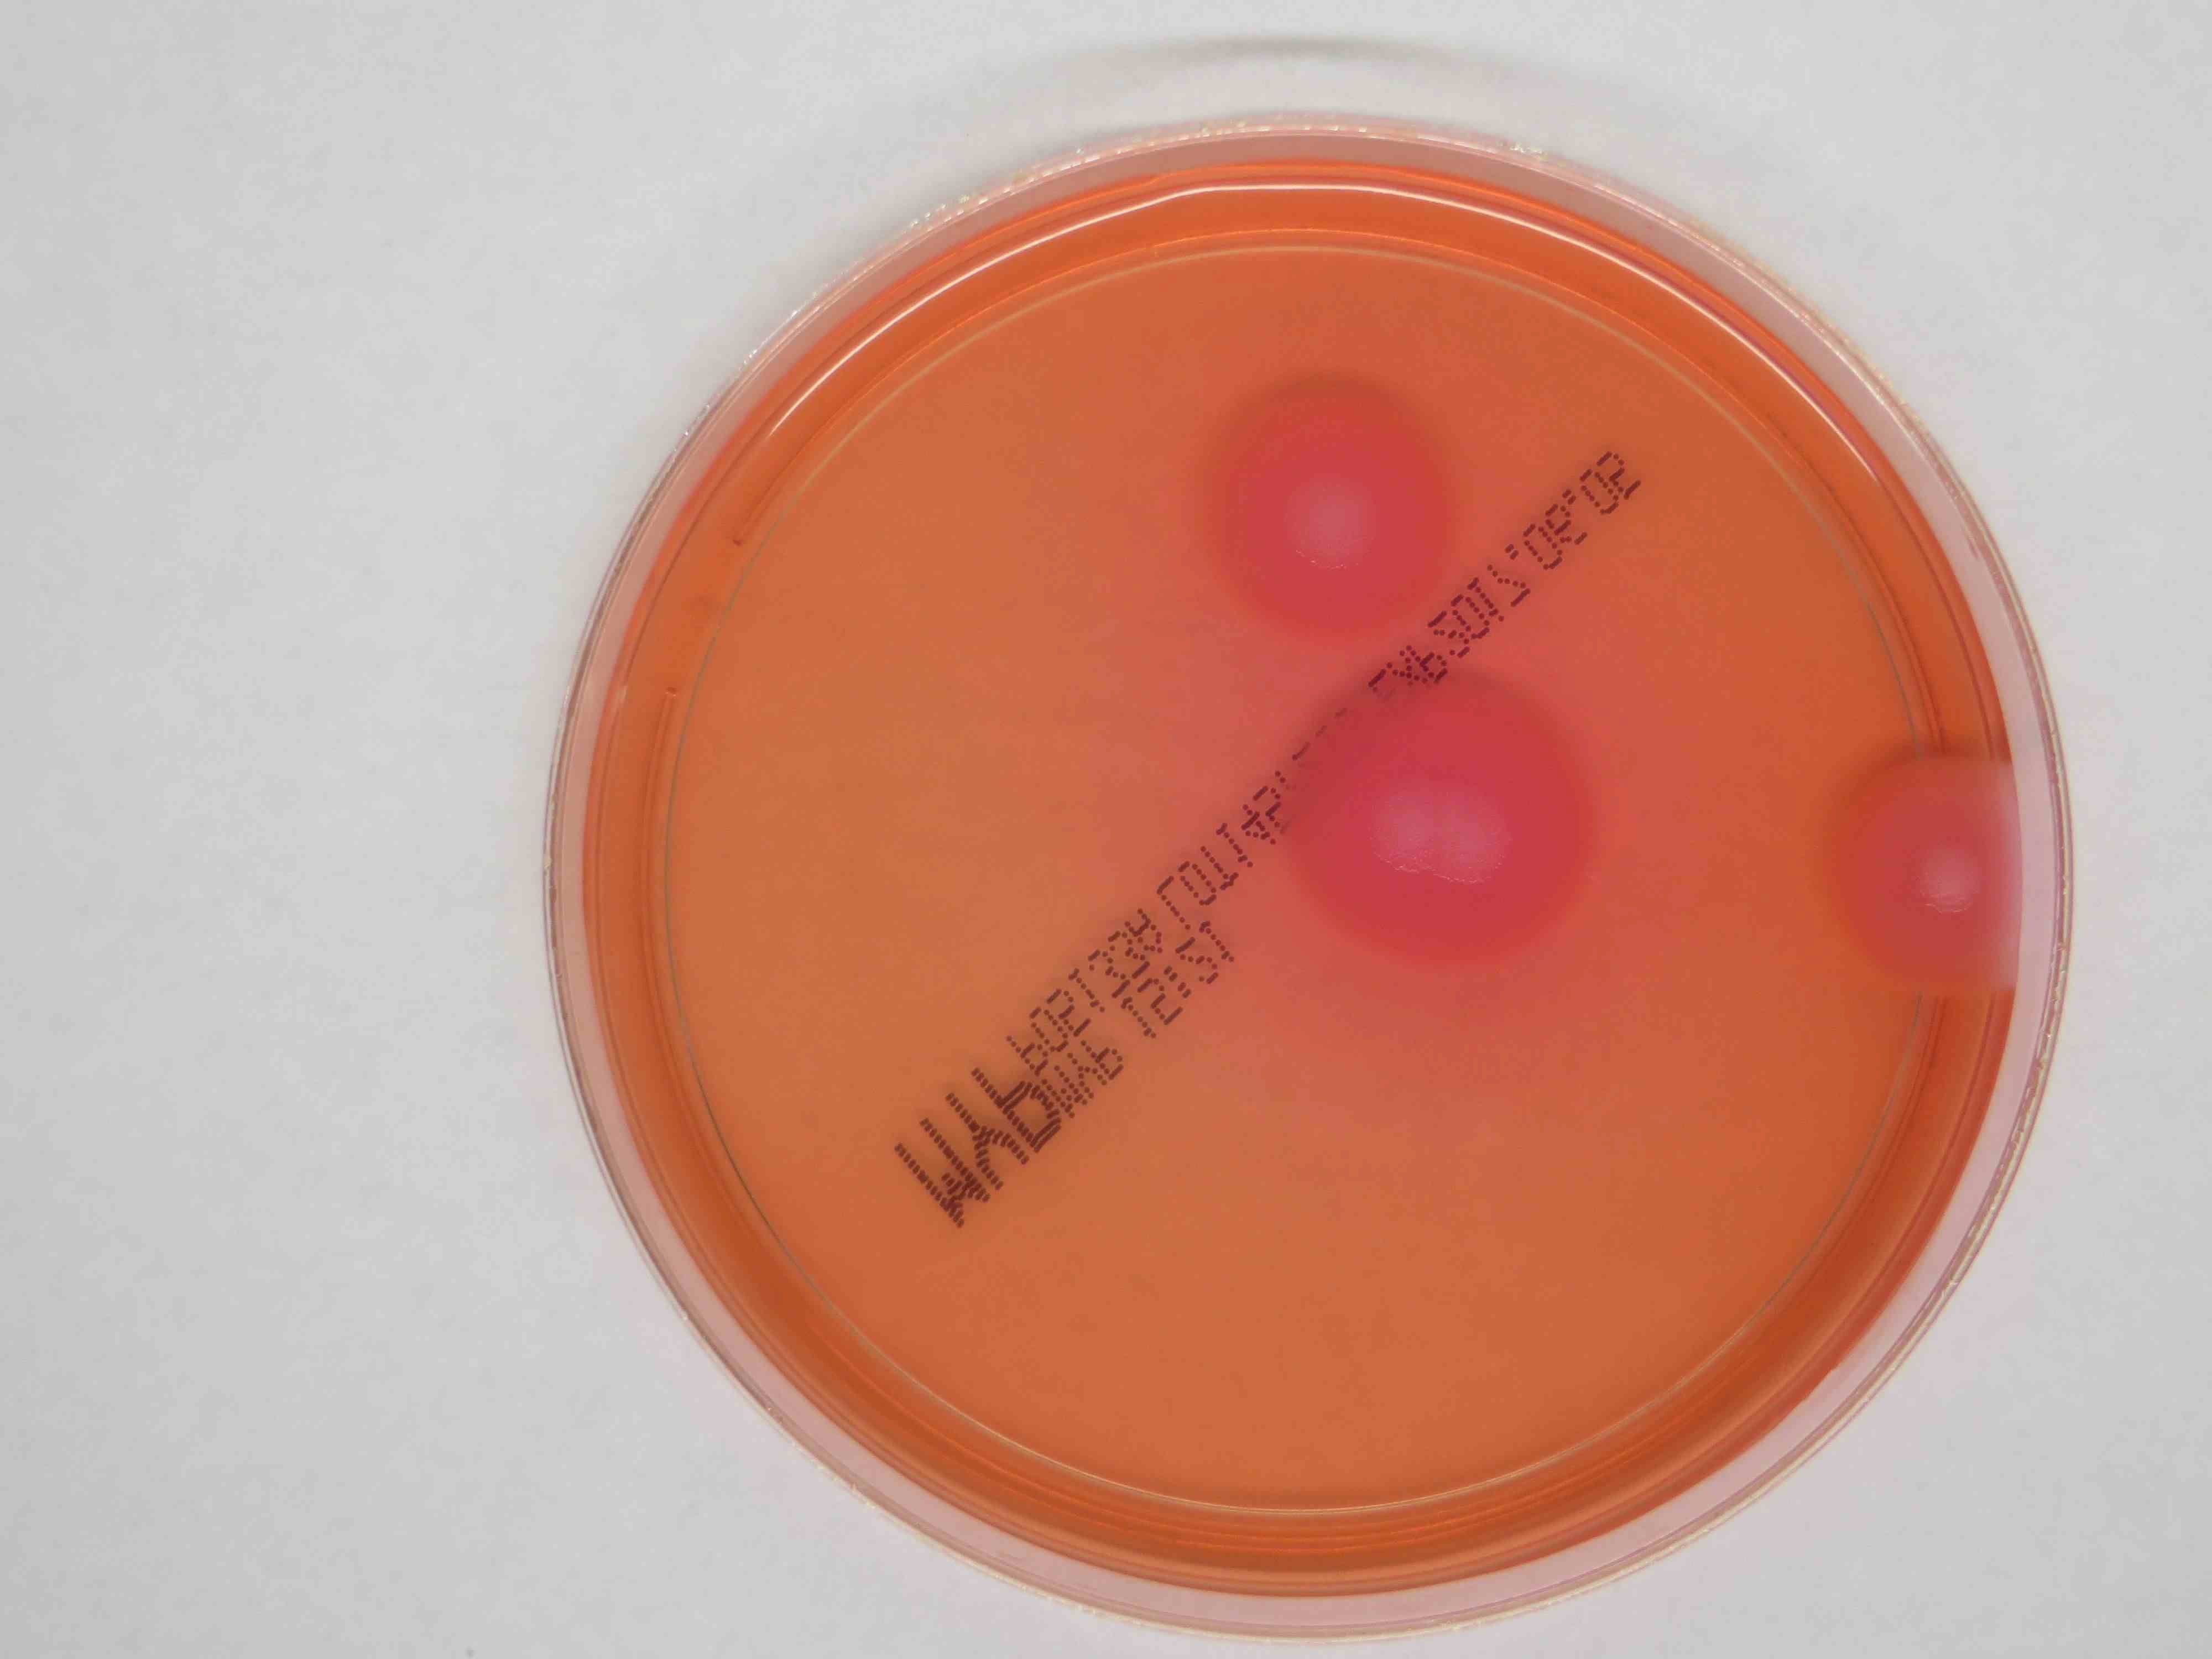 Das Bild zeigt eine Petrischale mit Bacillus cereus Kolonien